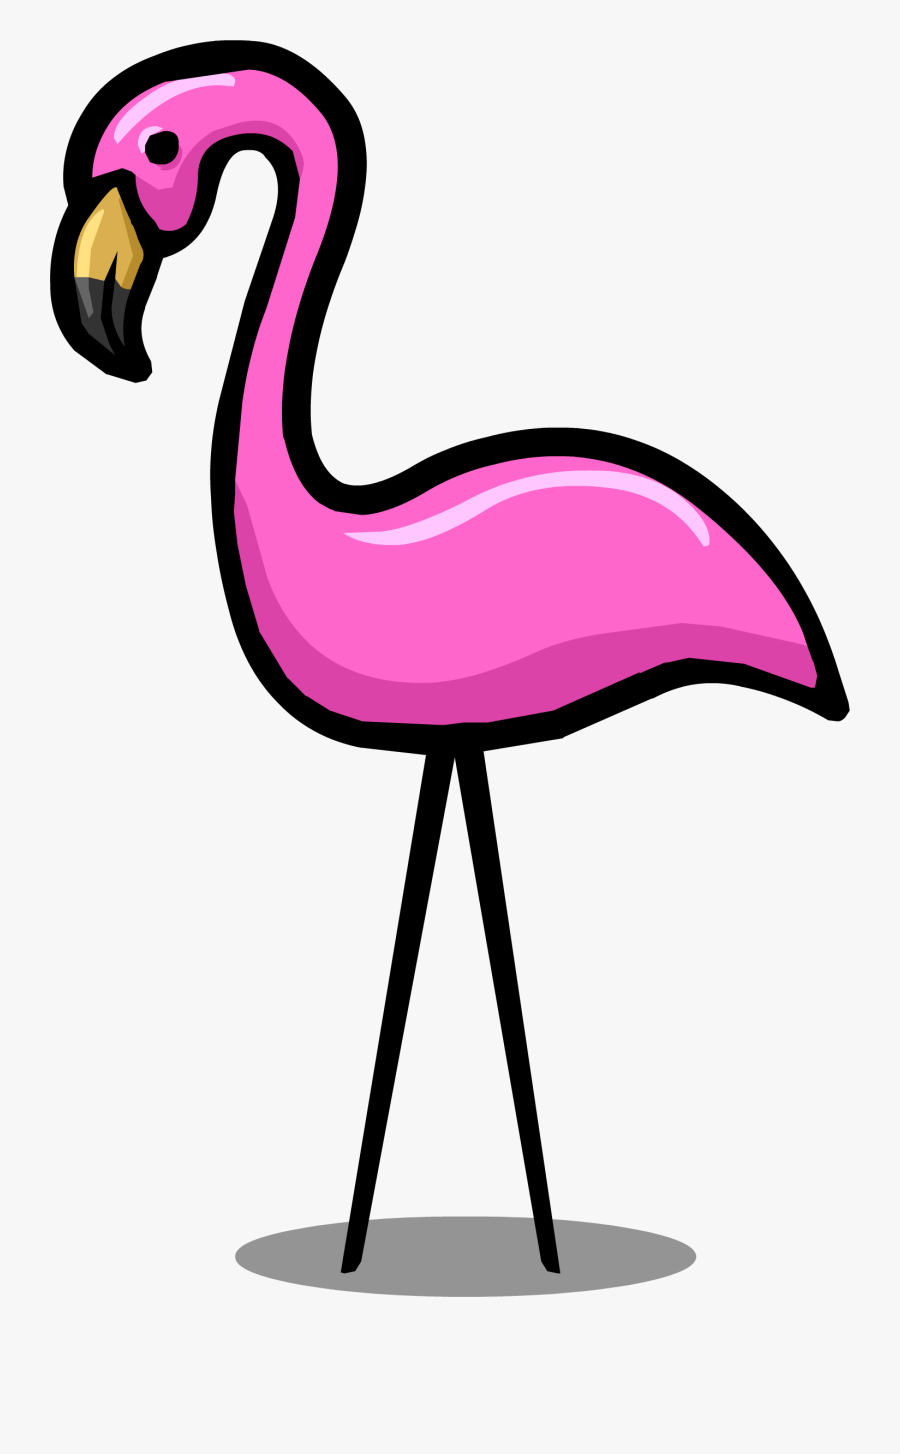 Image - Transparent Background Flamingo Clipart, Transparent Clipart